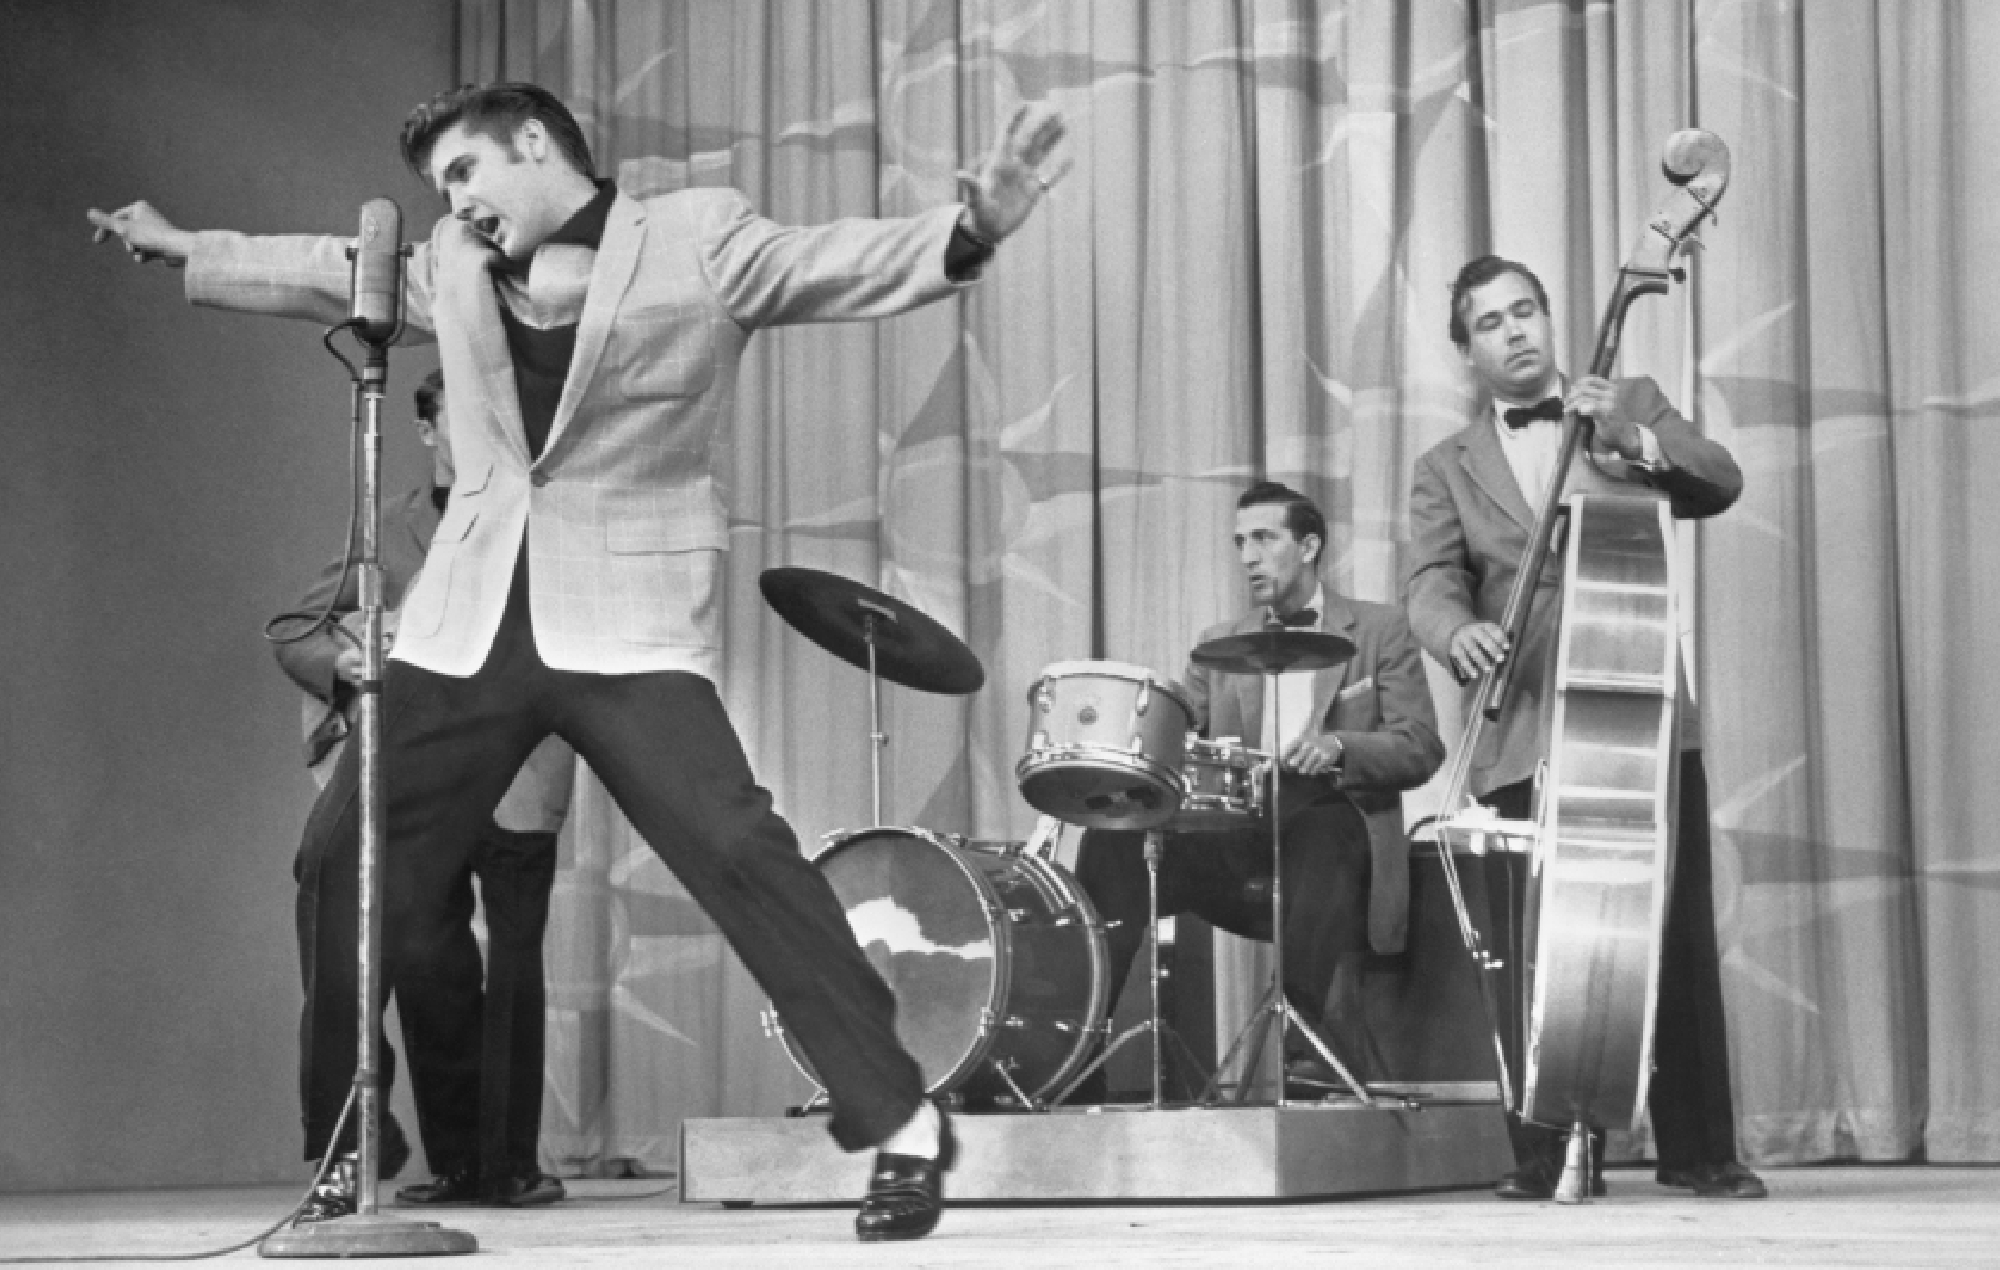 Elvis Presley performing